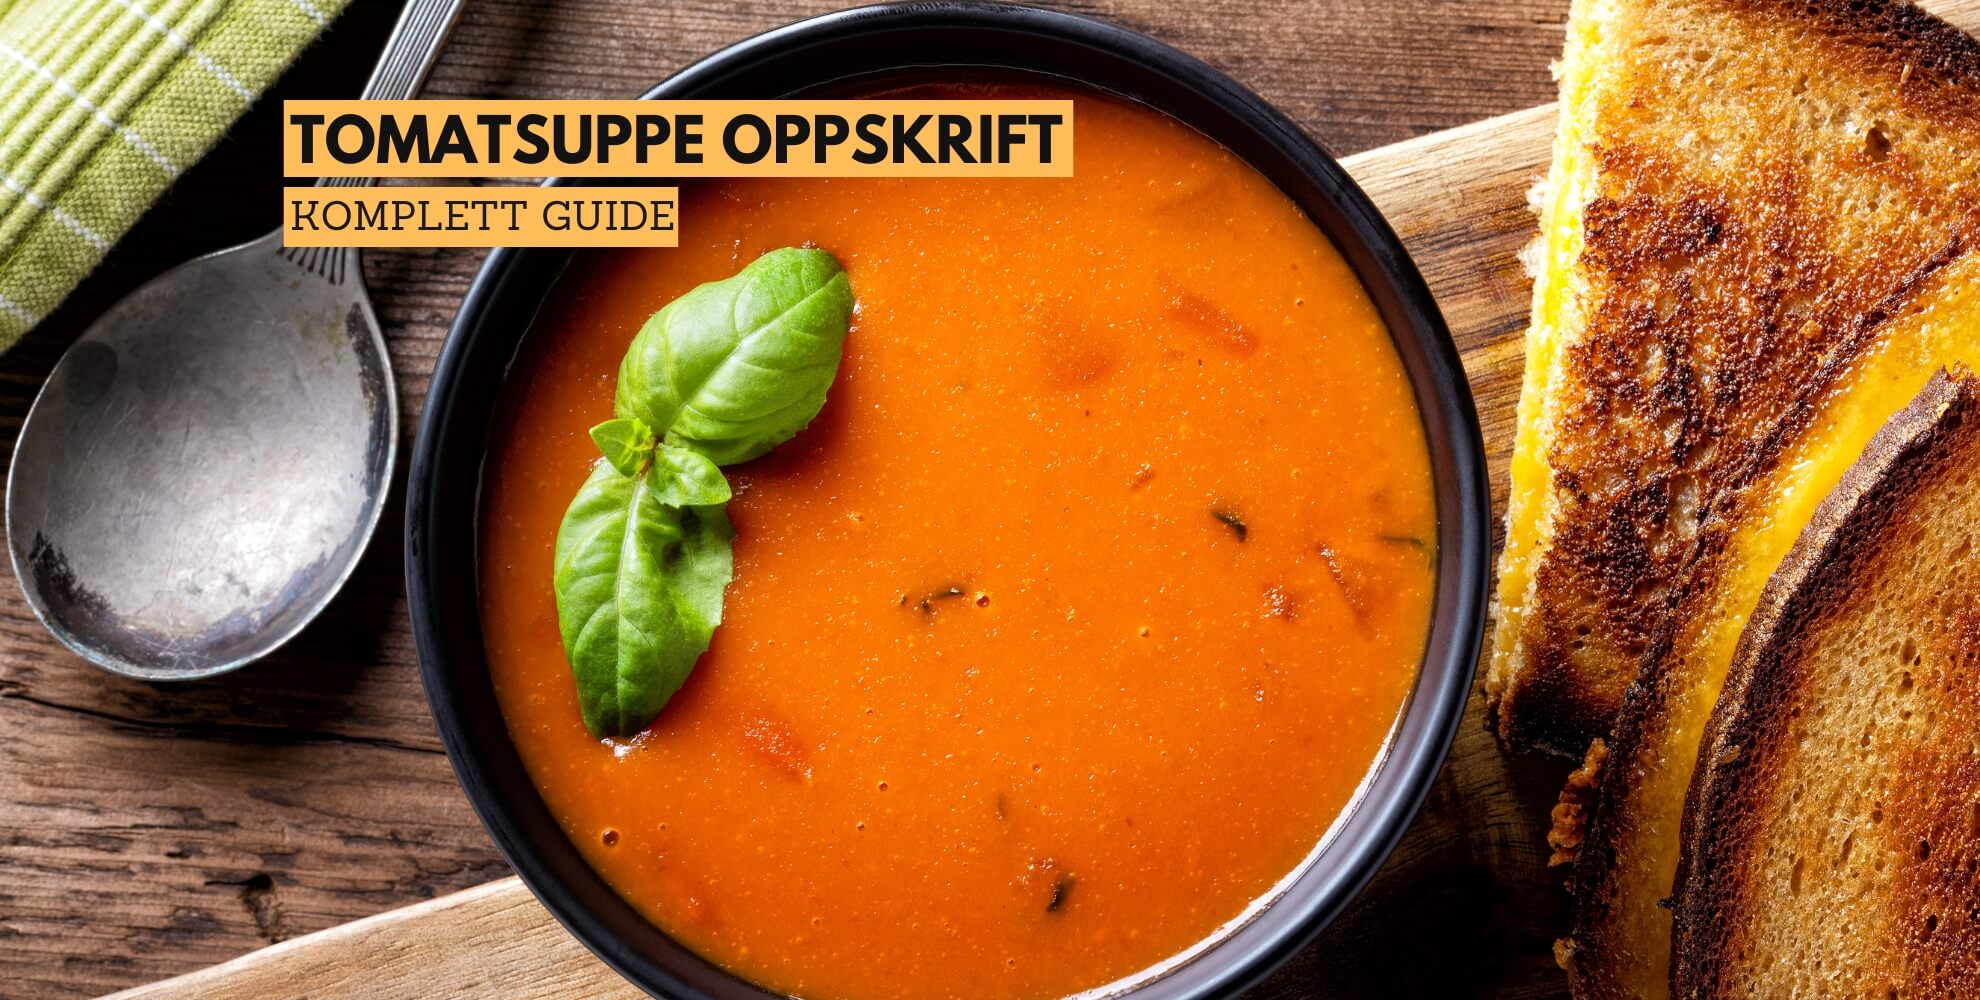 Bilde av en tomatsuppe med tekst som sier: tomatsuppe oppskrift, komplett guide